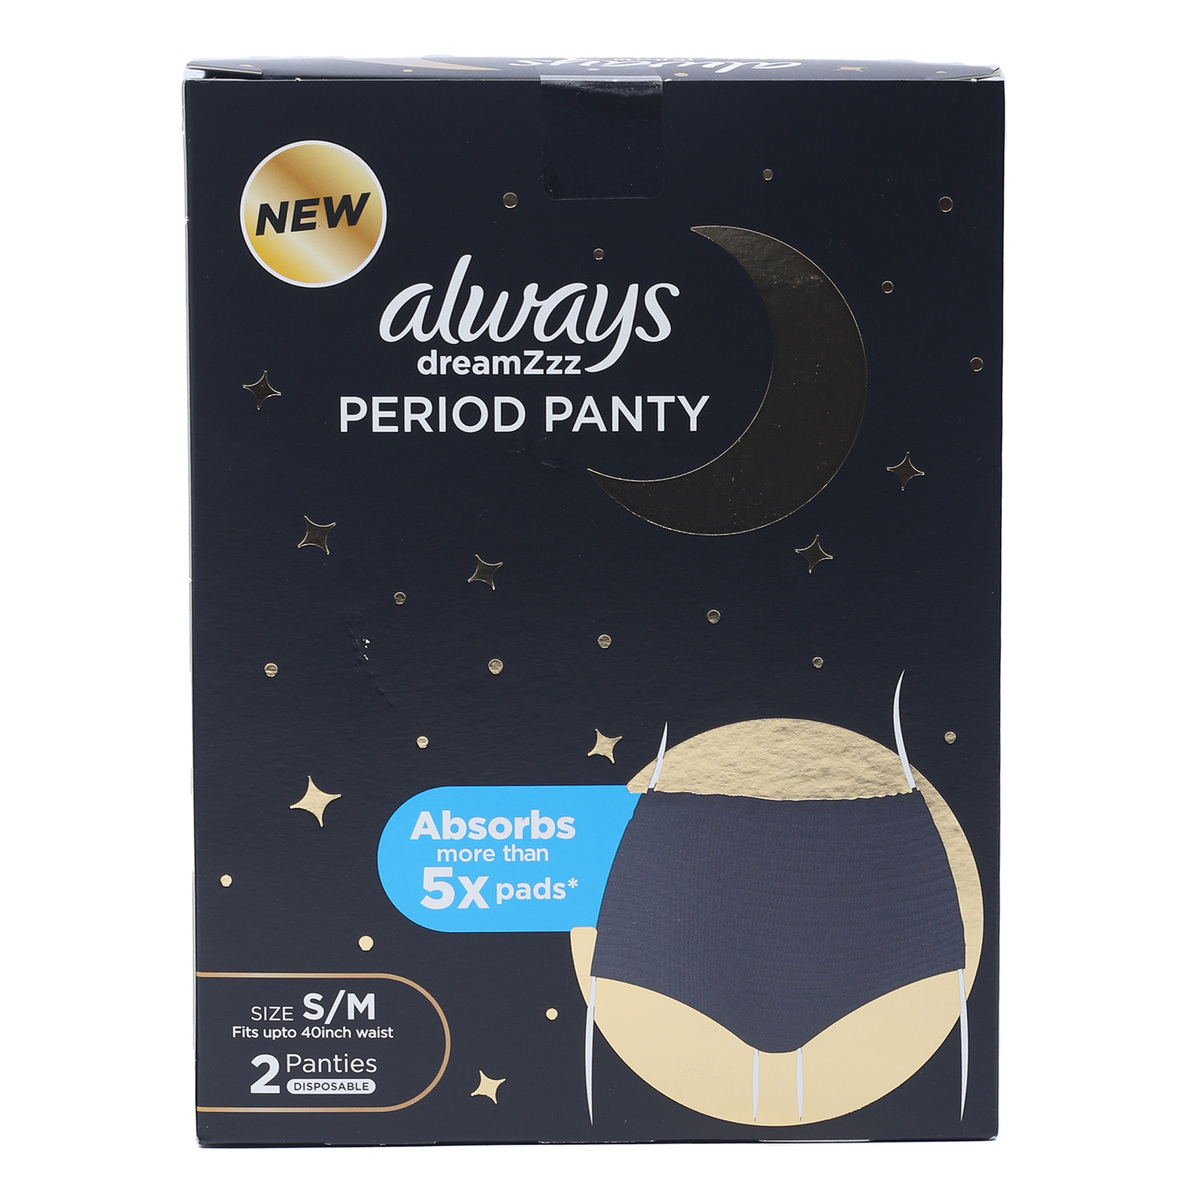 OUENZ Period Panties Leak Proof Menstrual Underwear Women Tweens  Girls,Mulit Size Small, Multicolored-b-5 Pack, S price in UAE,  UAE